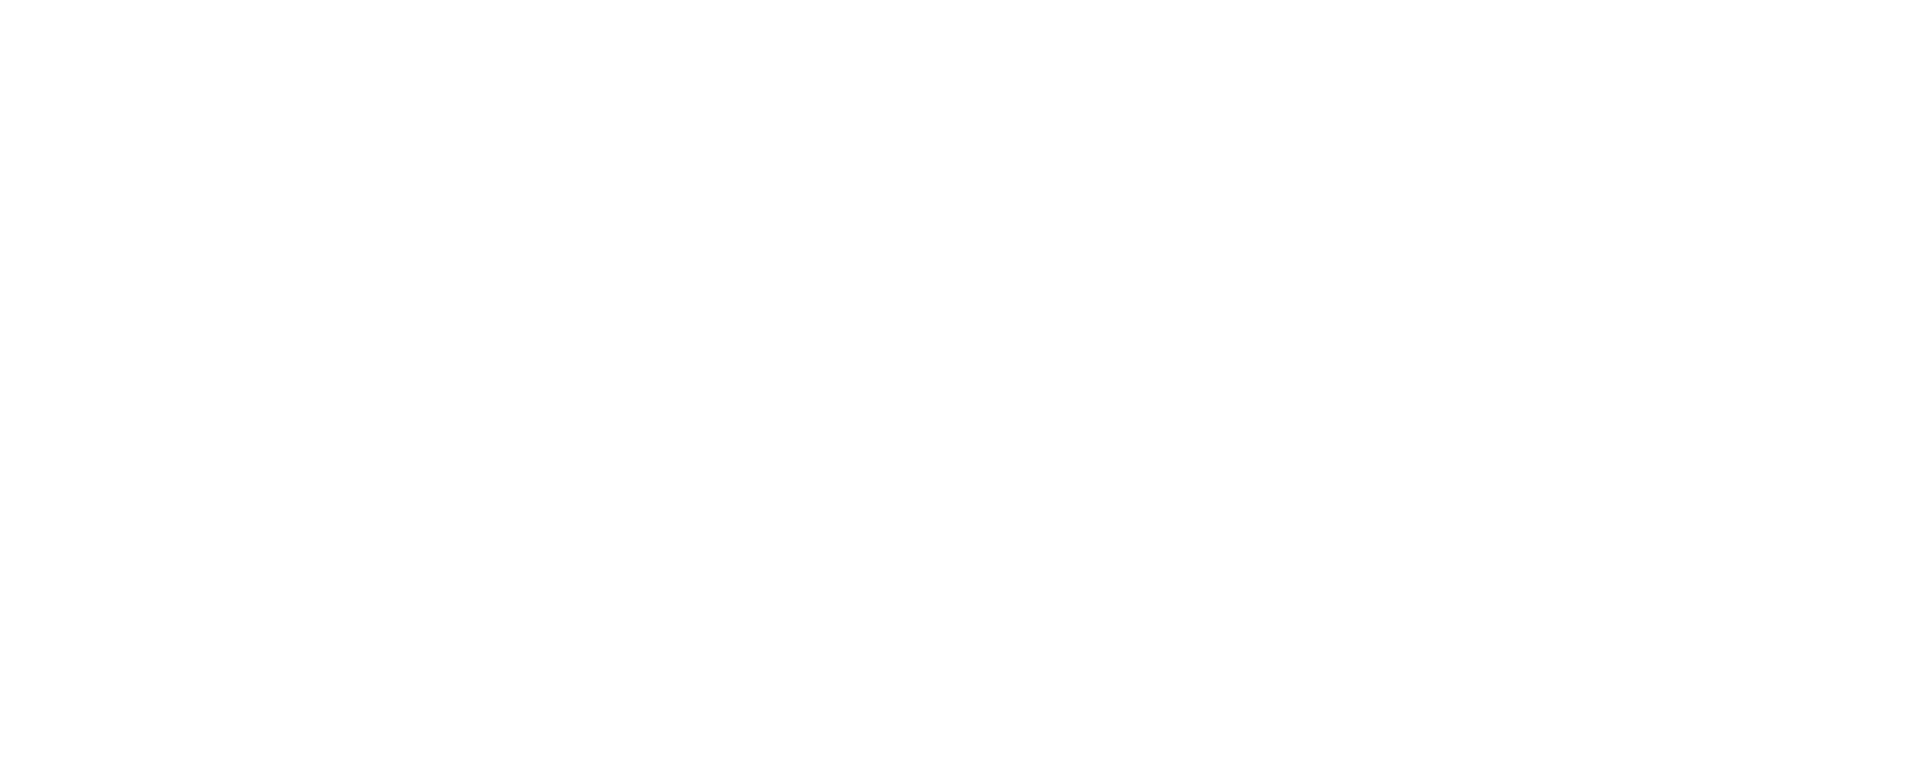 (c) Schuelerfirma.com